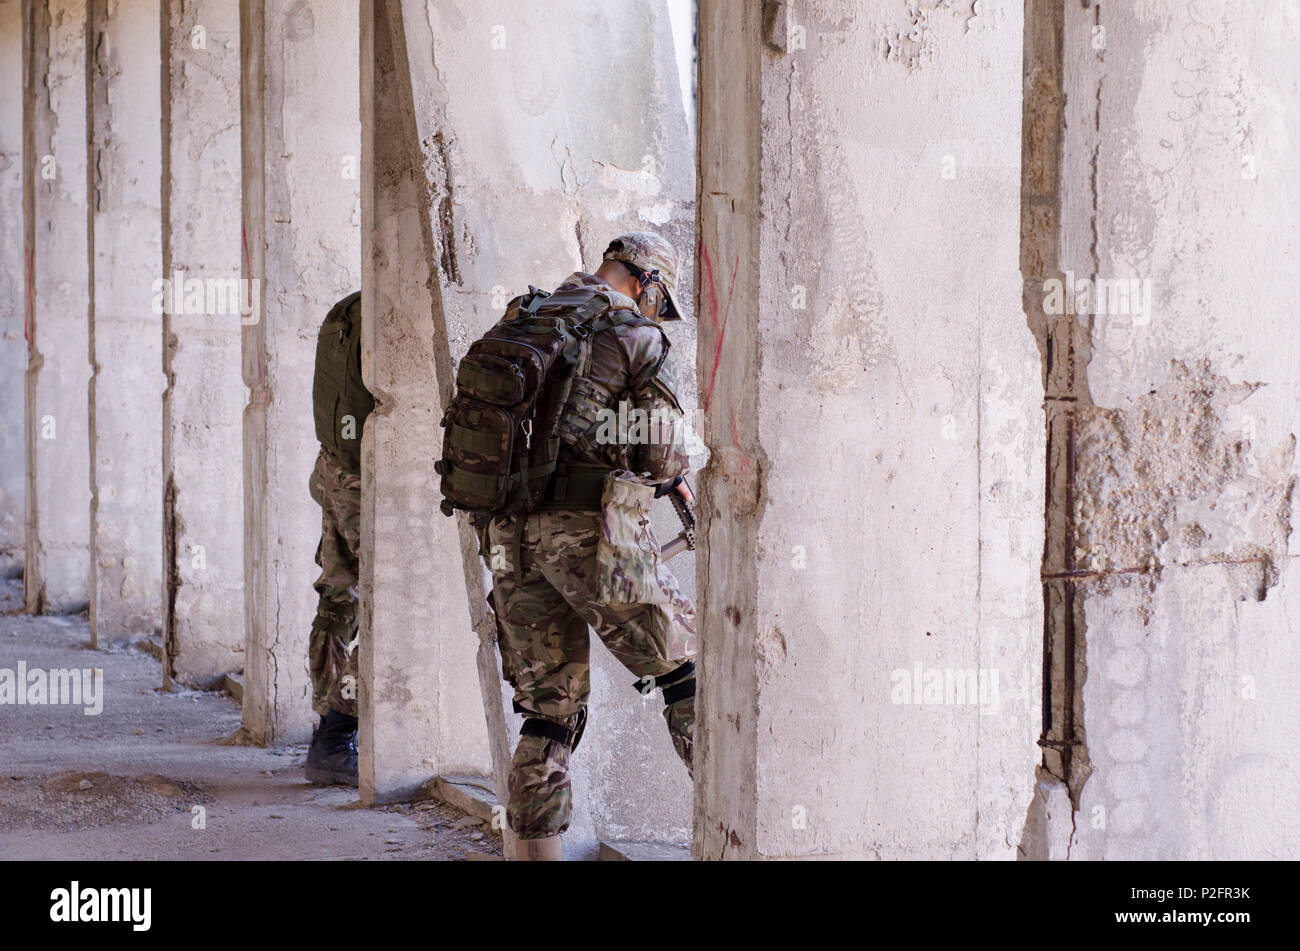 Soldat des forces spéciales à l'intérieur du bâtiment objectif carabine de tir Banque D'Images